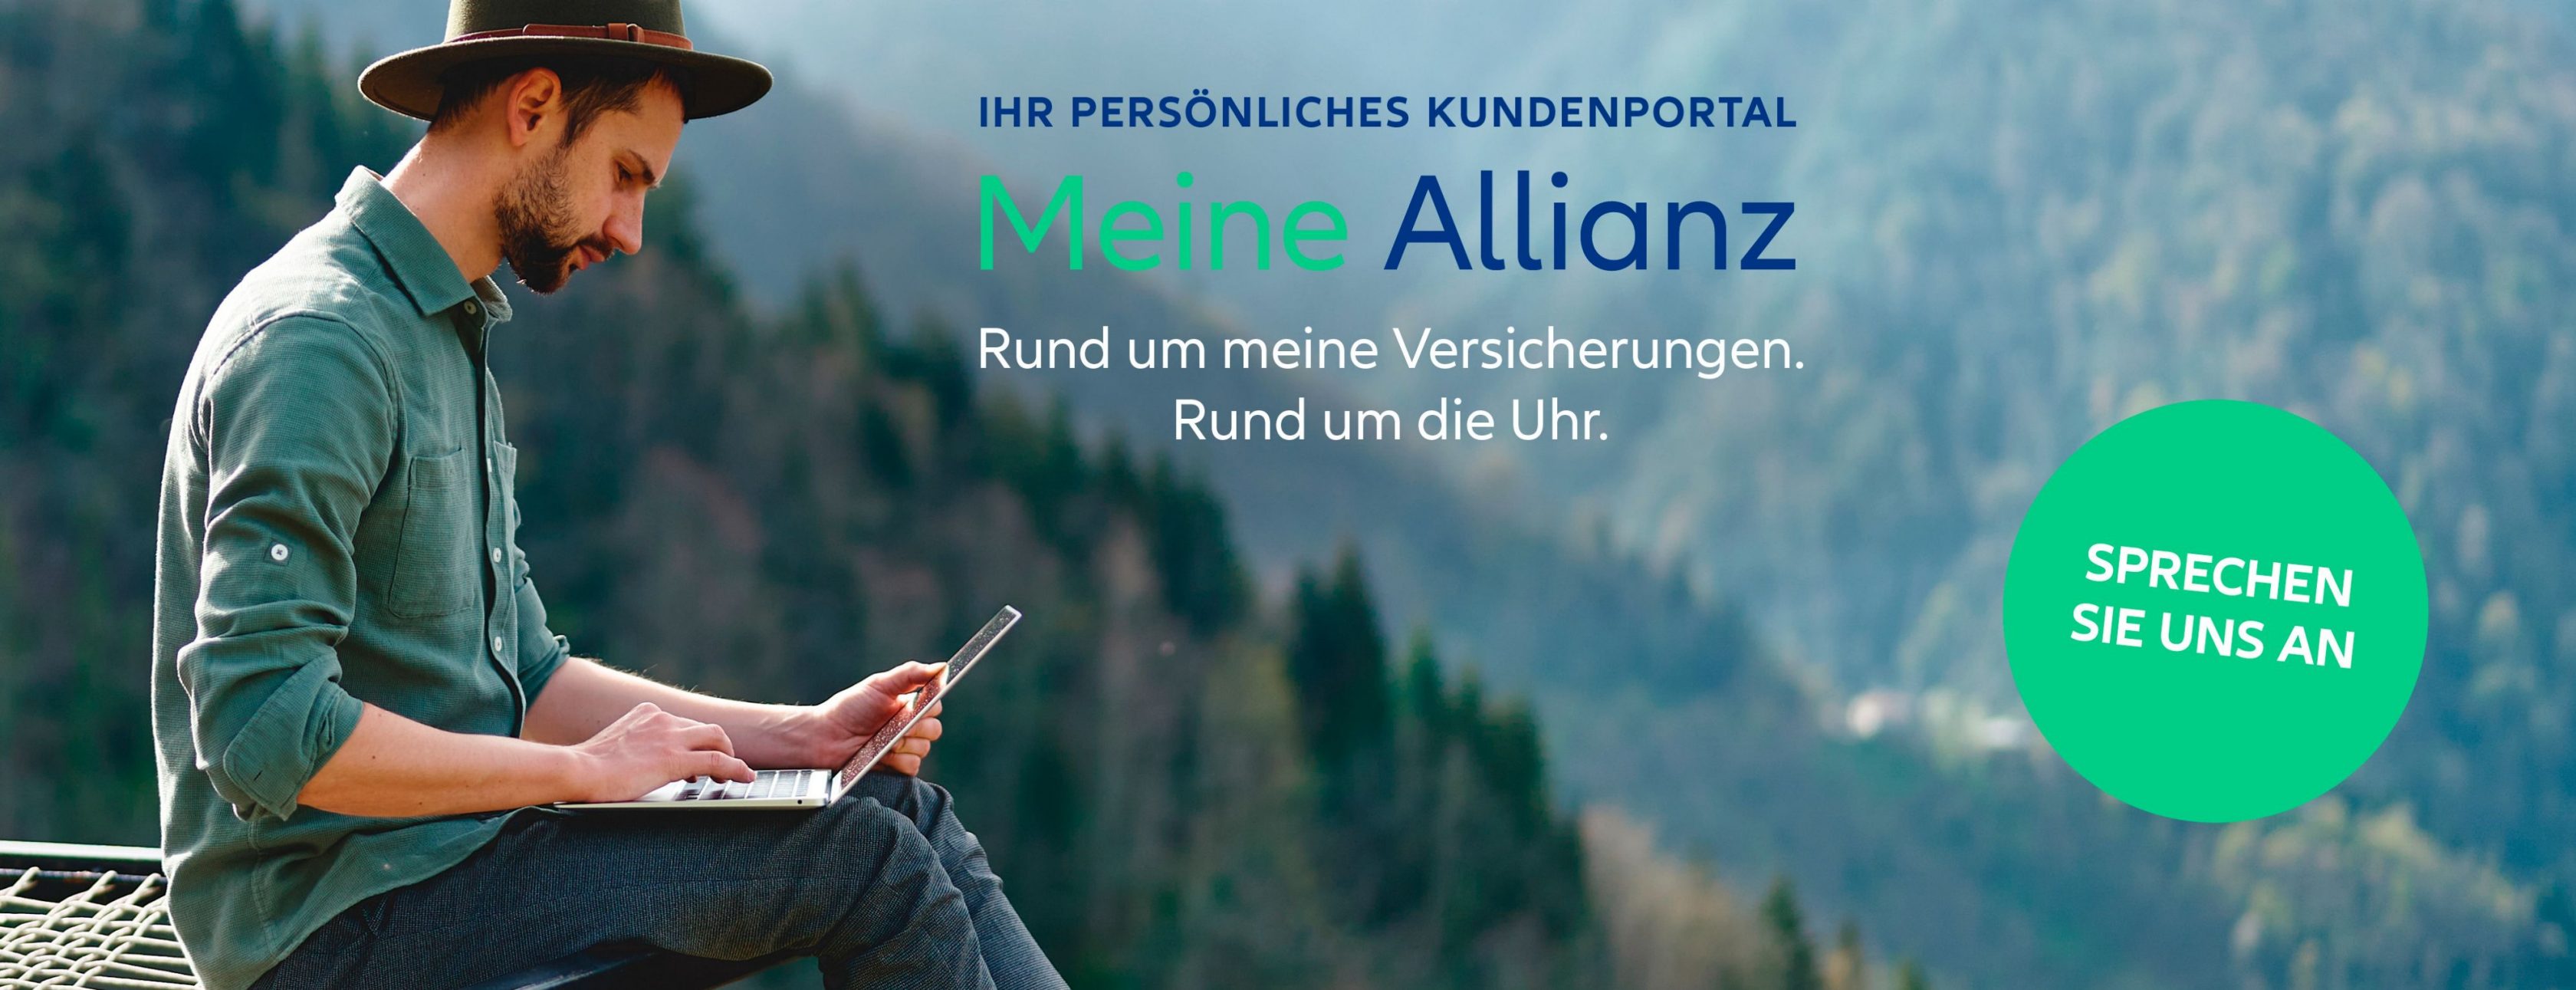 Allianz Versicherung Wolfgang Krause Bestwig - Meine Allianz Titelbild